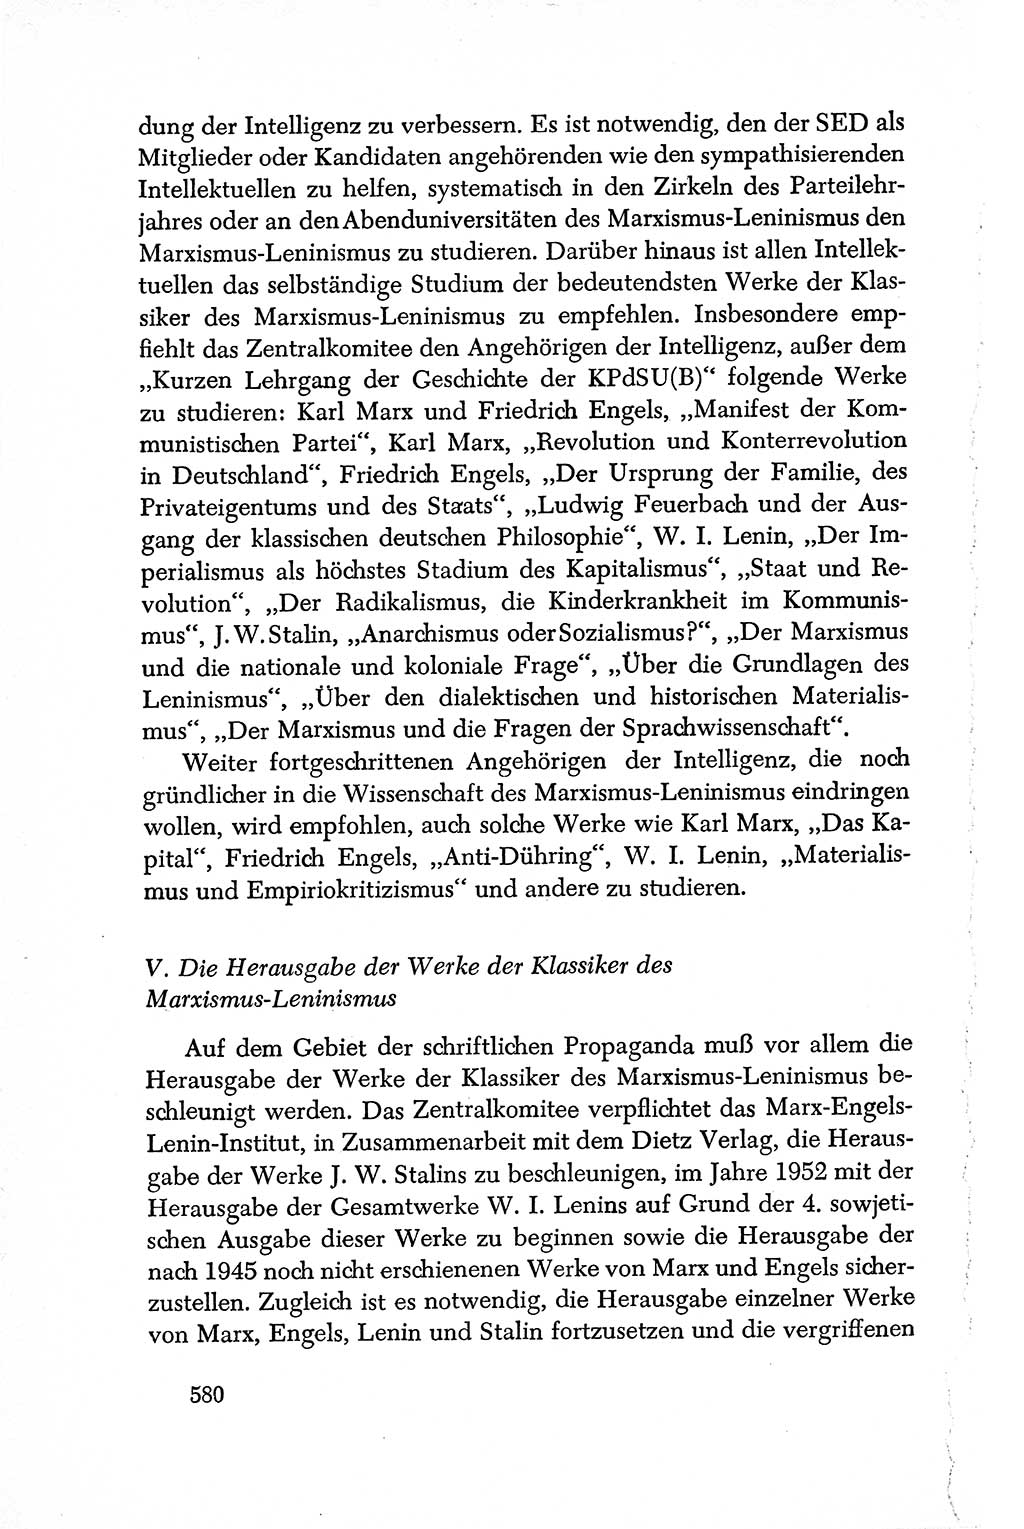 Dokumente der Sozialistischen Einheitspartei Deutschlands (SED) [Deutsche Demokratische Republik (DDR)] 1950-1952, Seite 580 (Dok. SED DDR 1950-1952, S. 580)